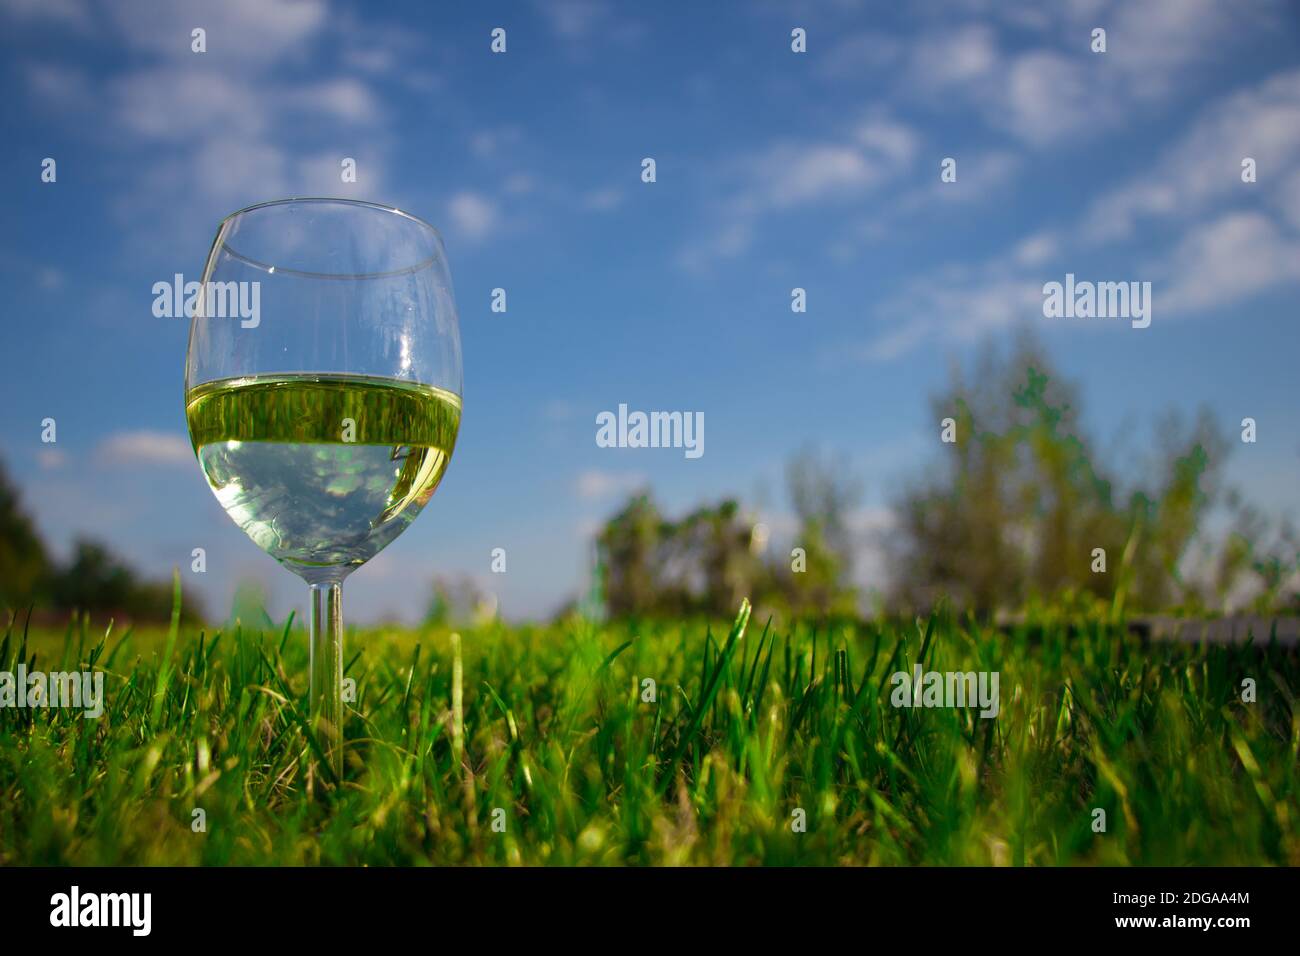 Vue en angle bas d'un verre avec une bouteille de vin blanc sur l'herbe verte fraîche Banque D'Images